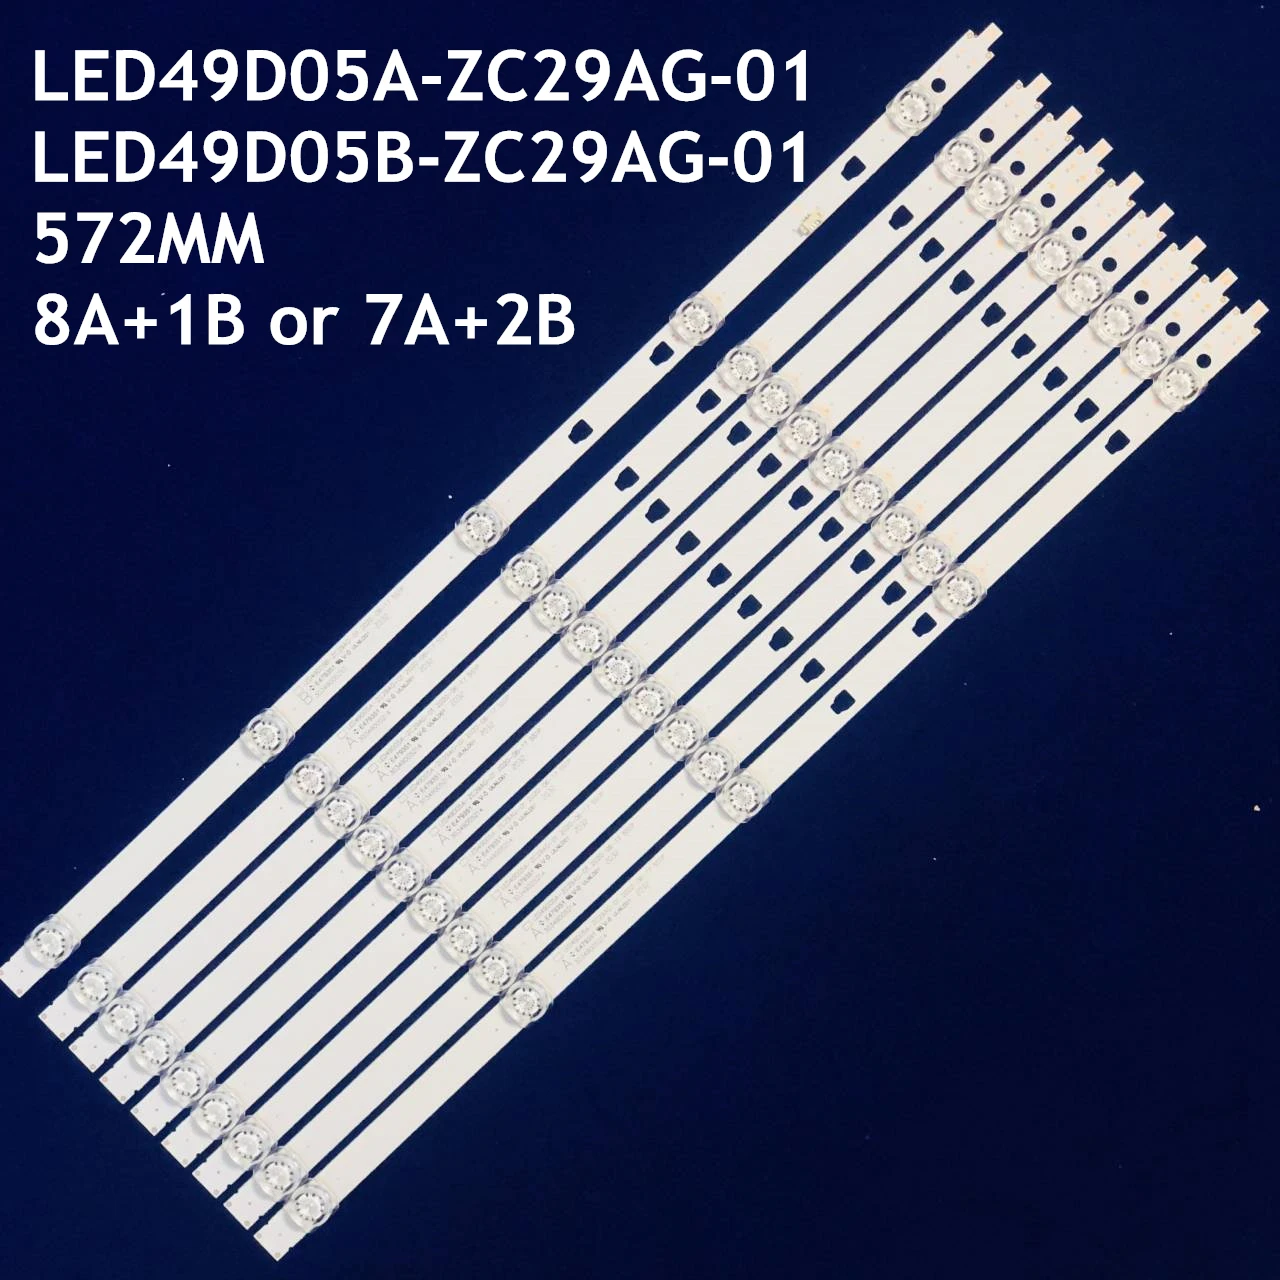 

LED Backlight strip 5 lamp for LS50A51 U50H3 LED49D05A-ZC23AG-03 LED49D05B-ZC29AG-01 08 05A 11 V500DJ6-QE1 50C61 LT-49MA875